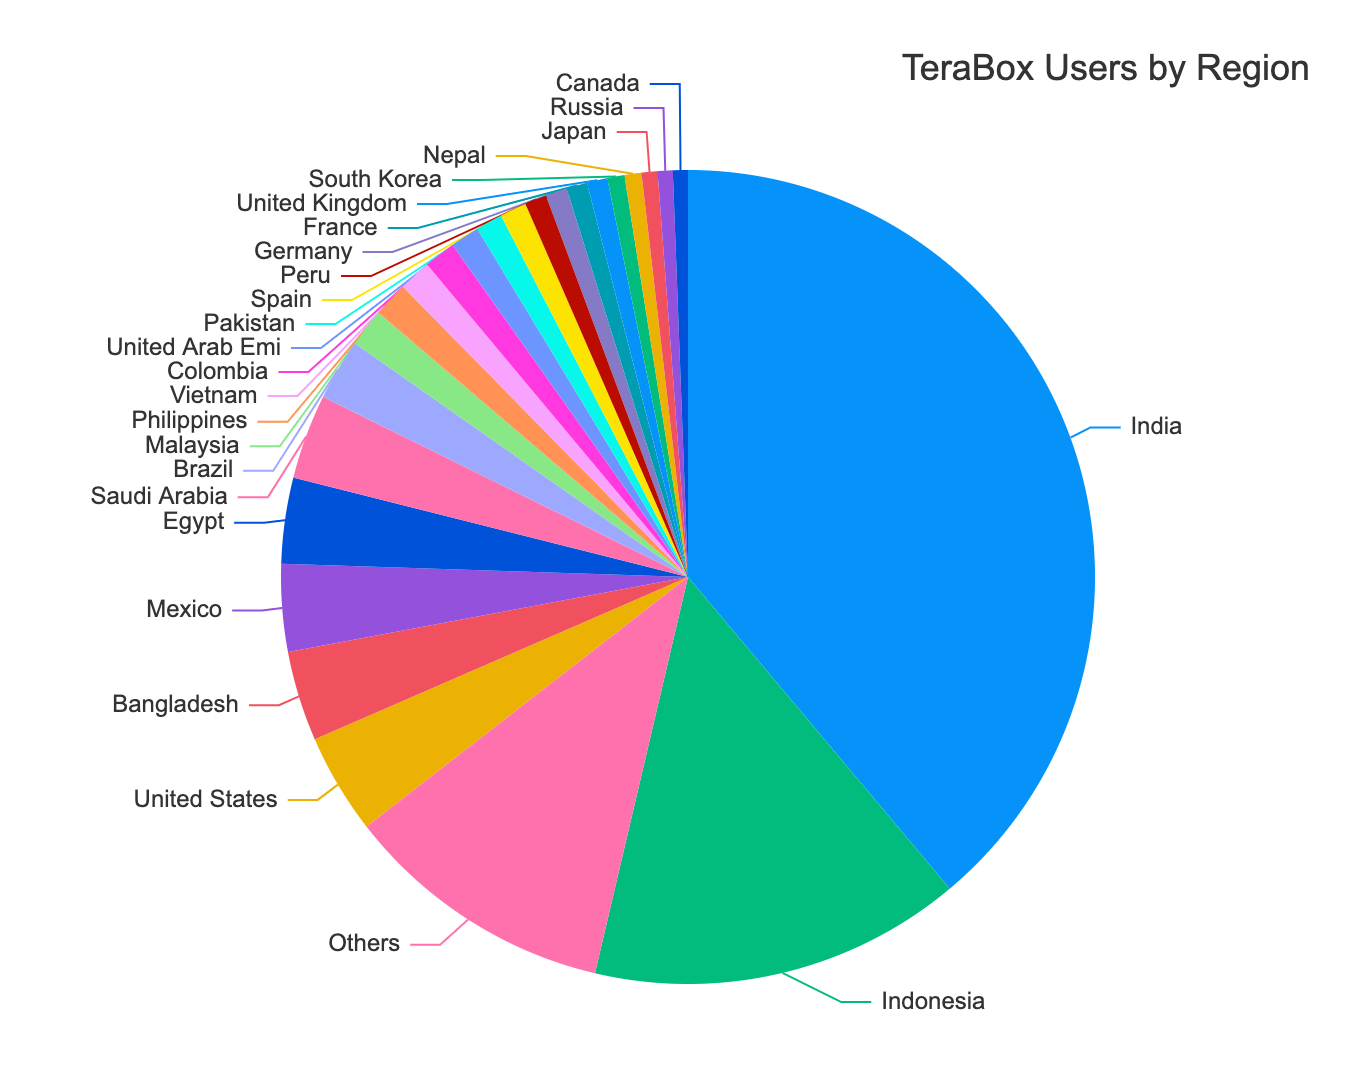 TeraBox users by region